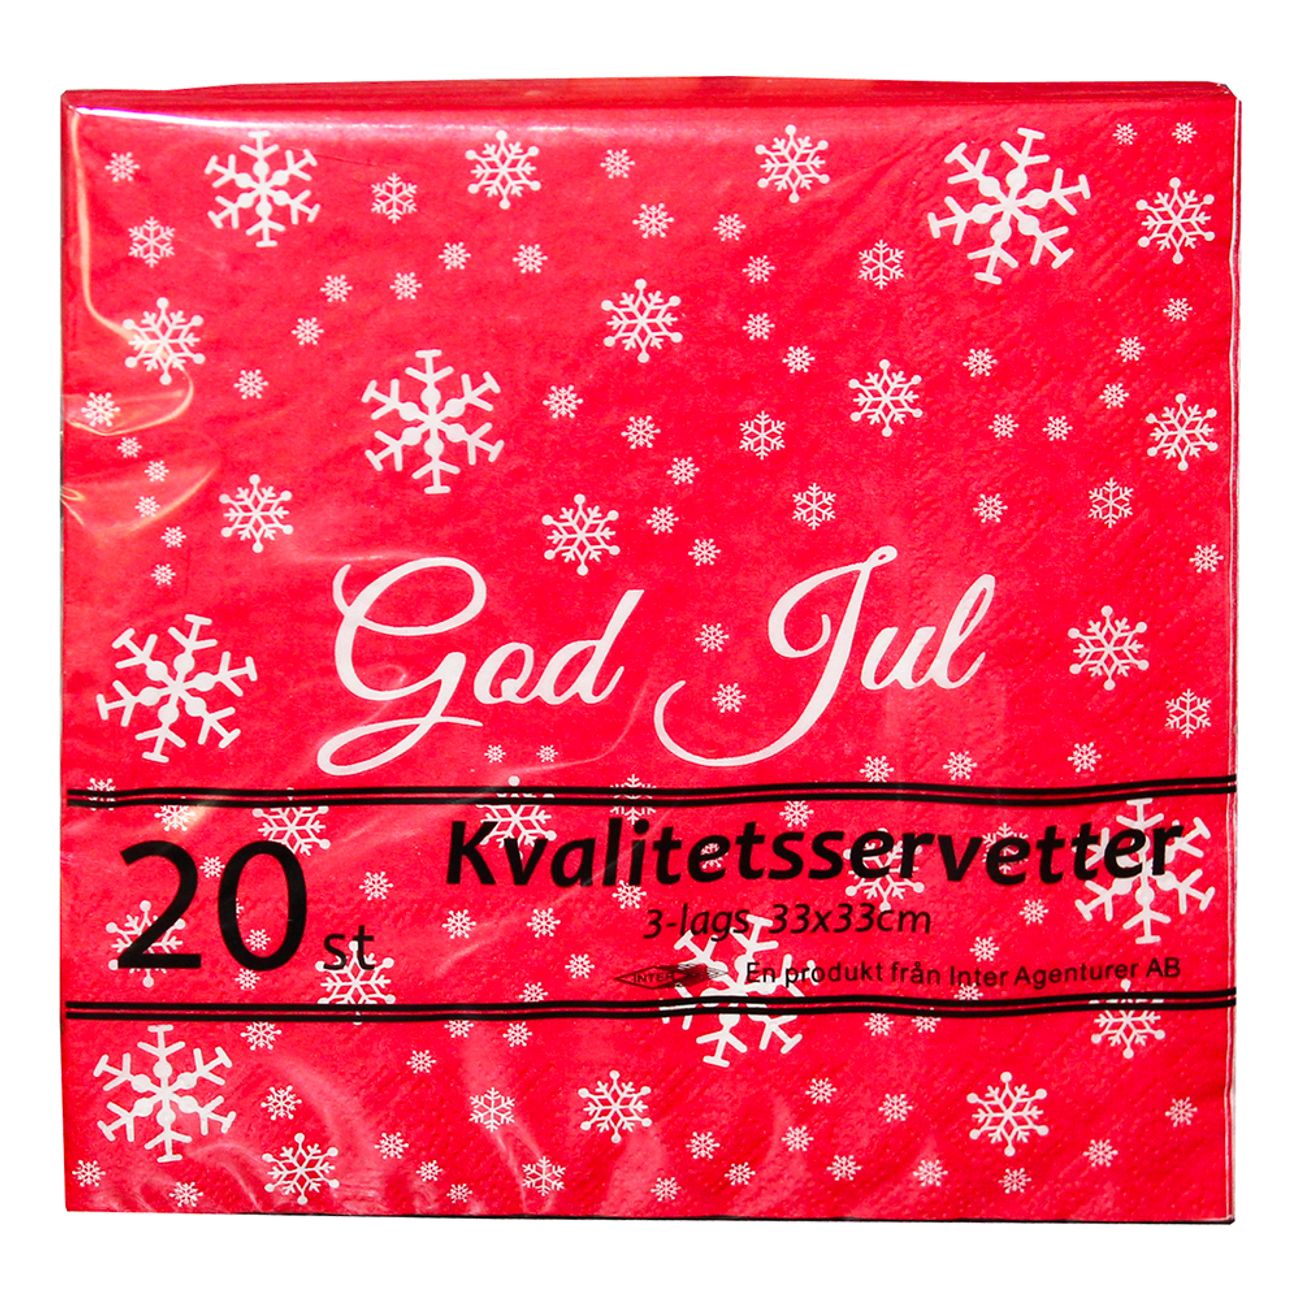 servetter-roda-god-jul-76899-1